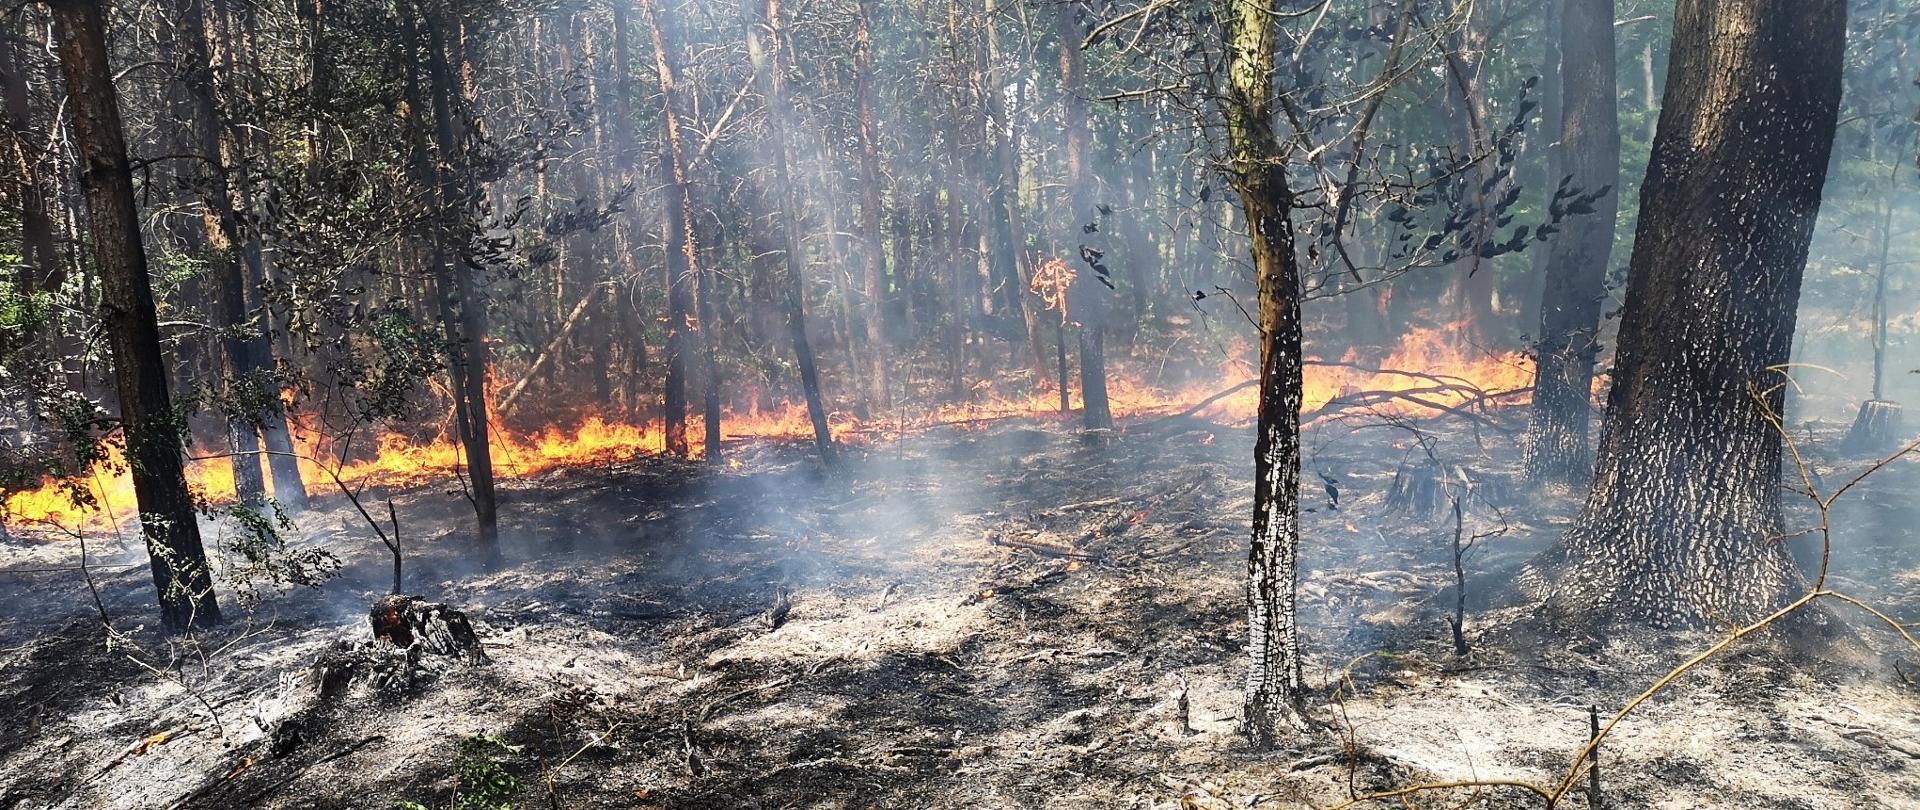 Widoczne płomienie w lesie, które obejmują ściółkę. Z przodu powierzchnia wypalona.